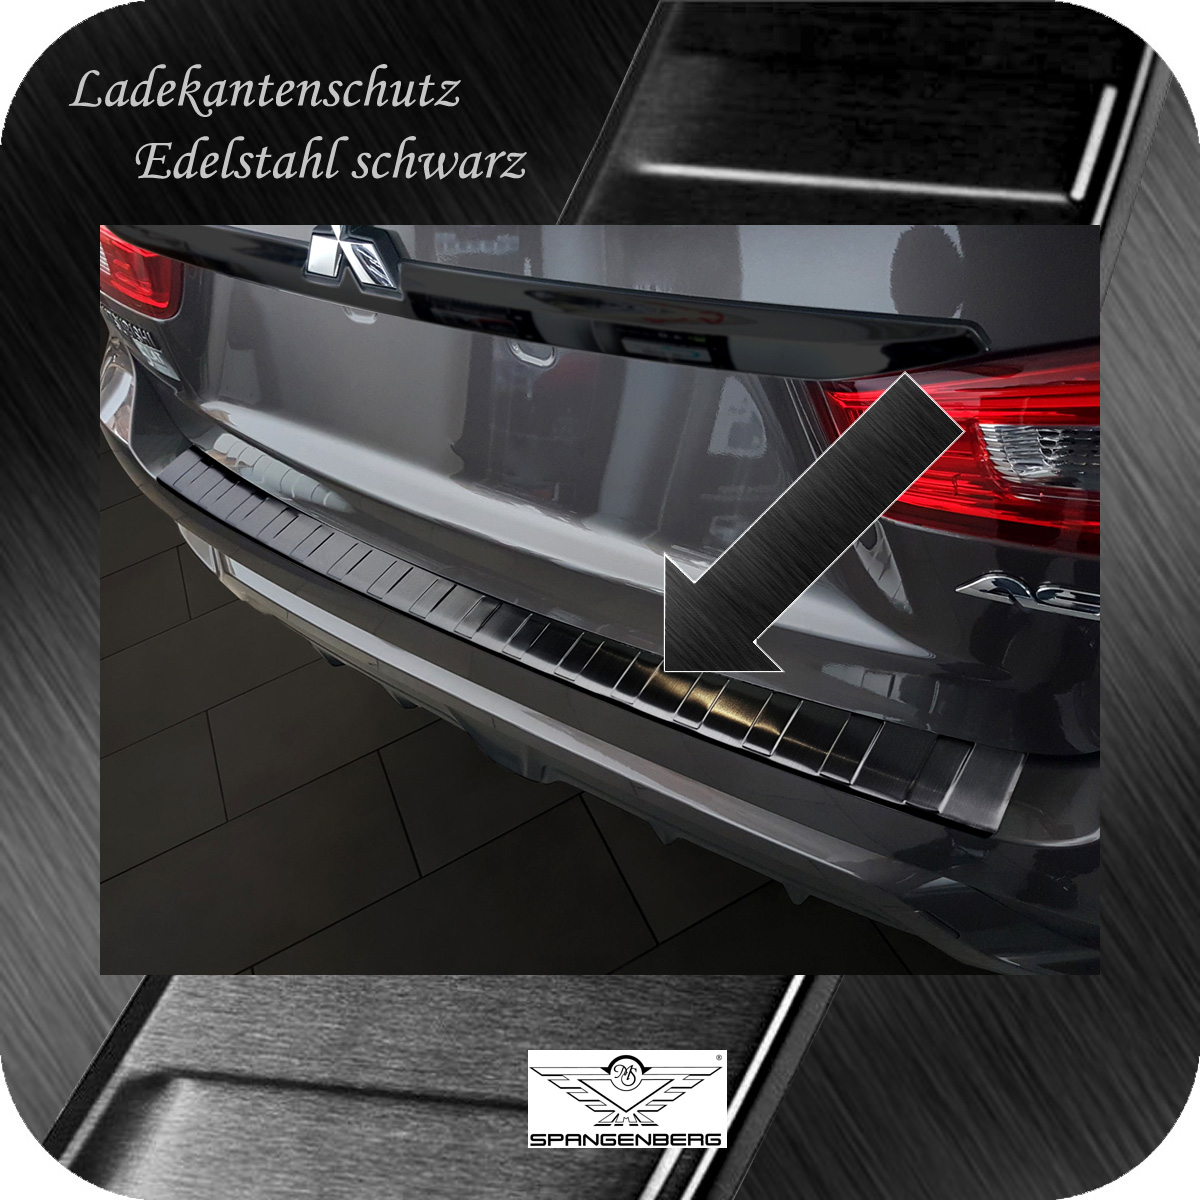 Ladekantenschutz Edelstahl schwarz für Mitsubishi ASX Facelift 2016-2019 3245156